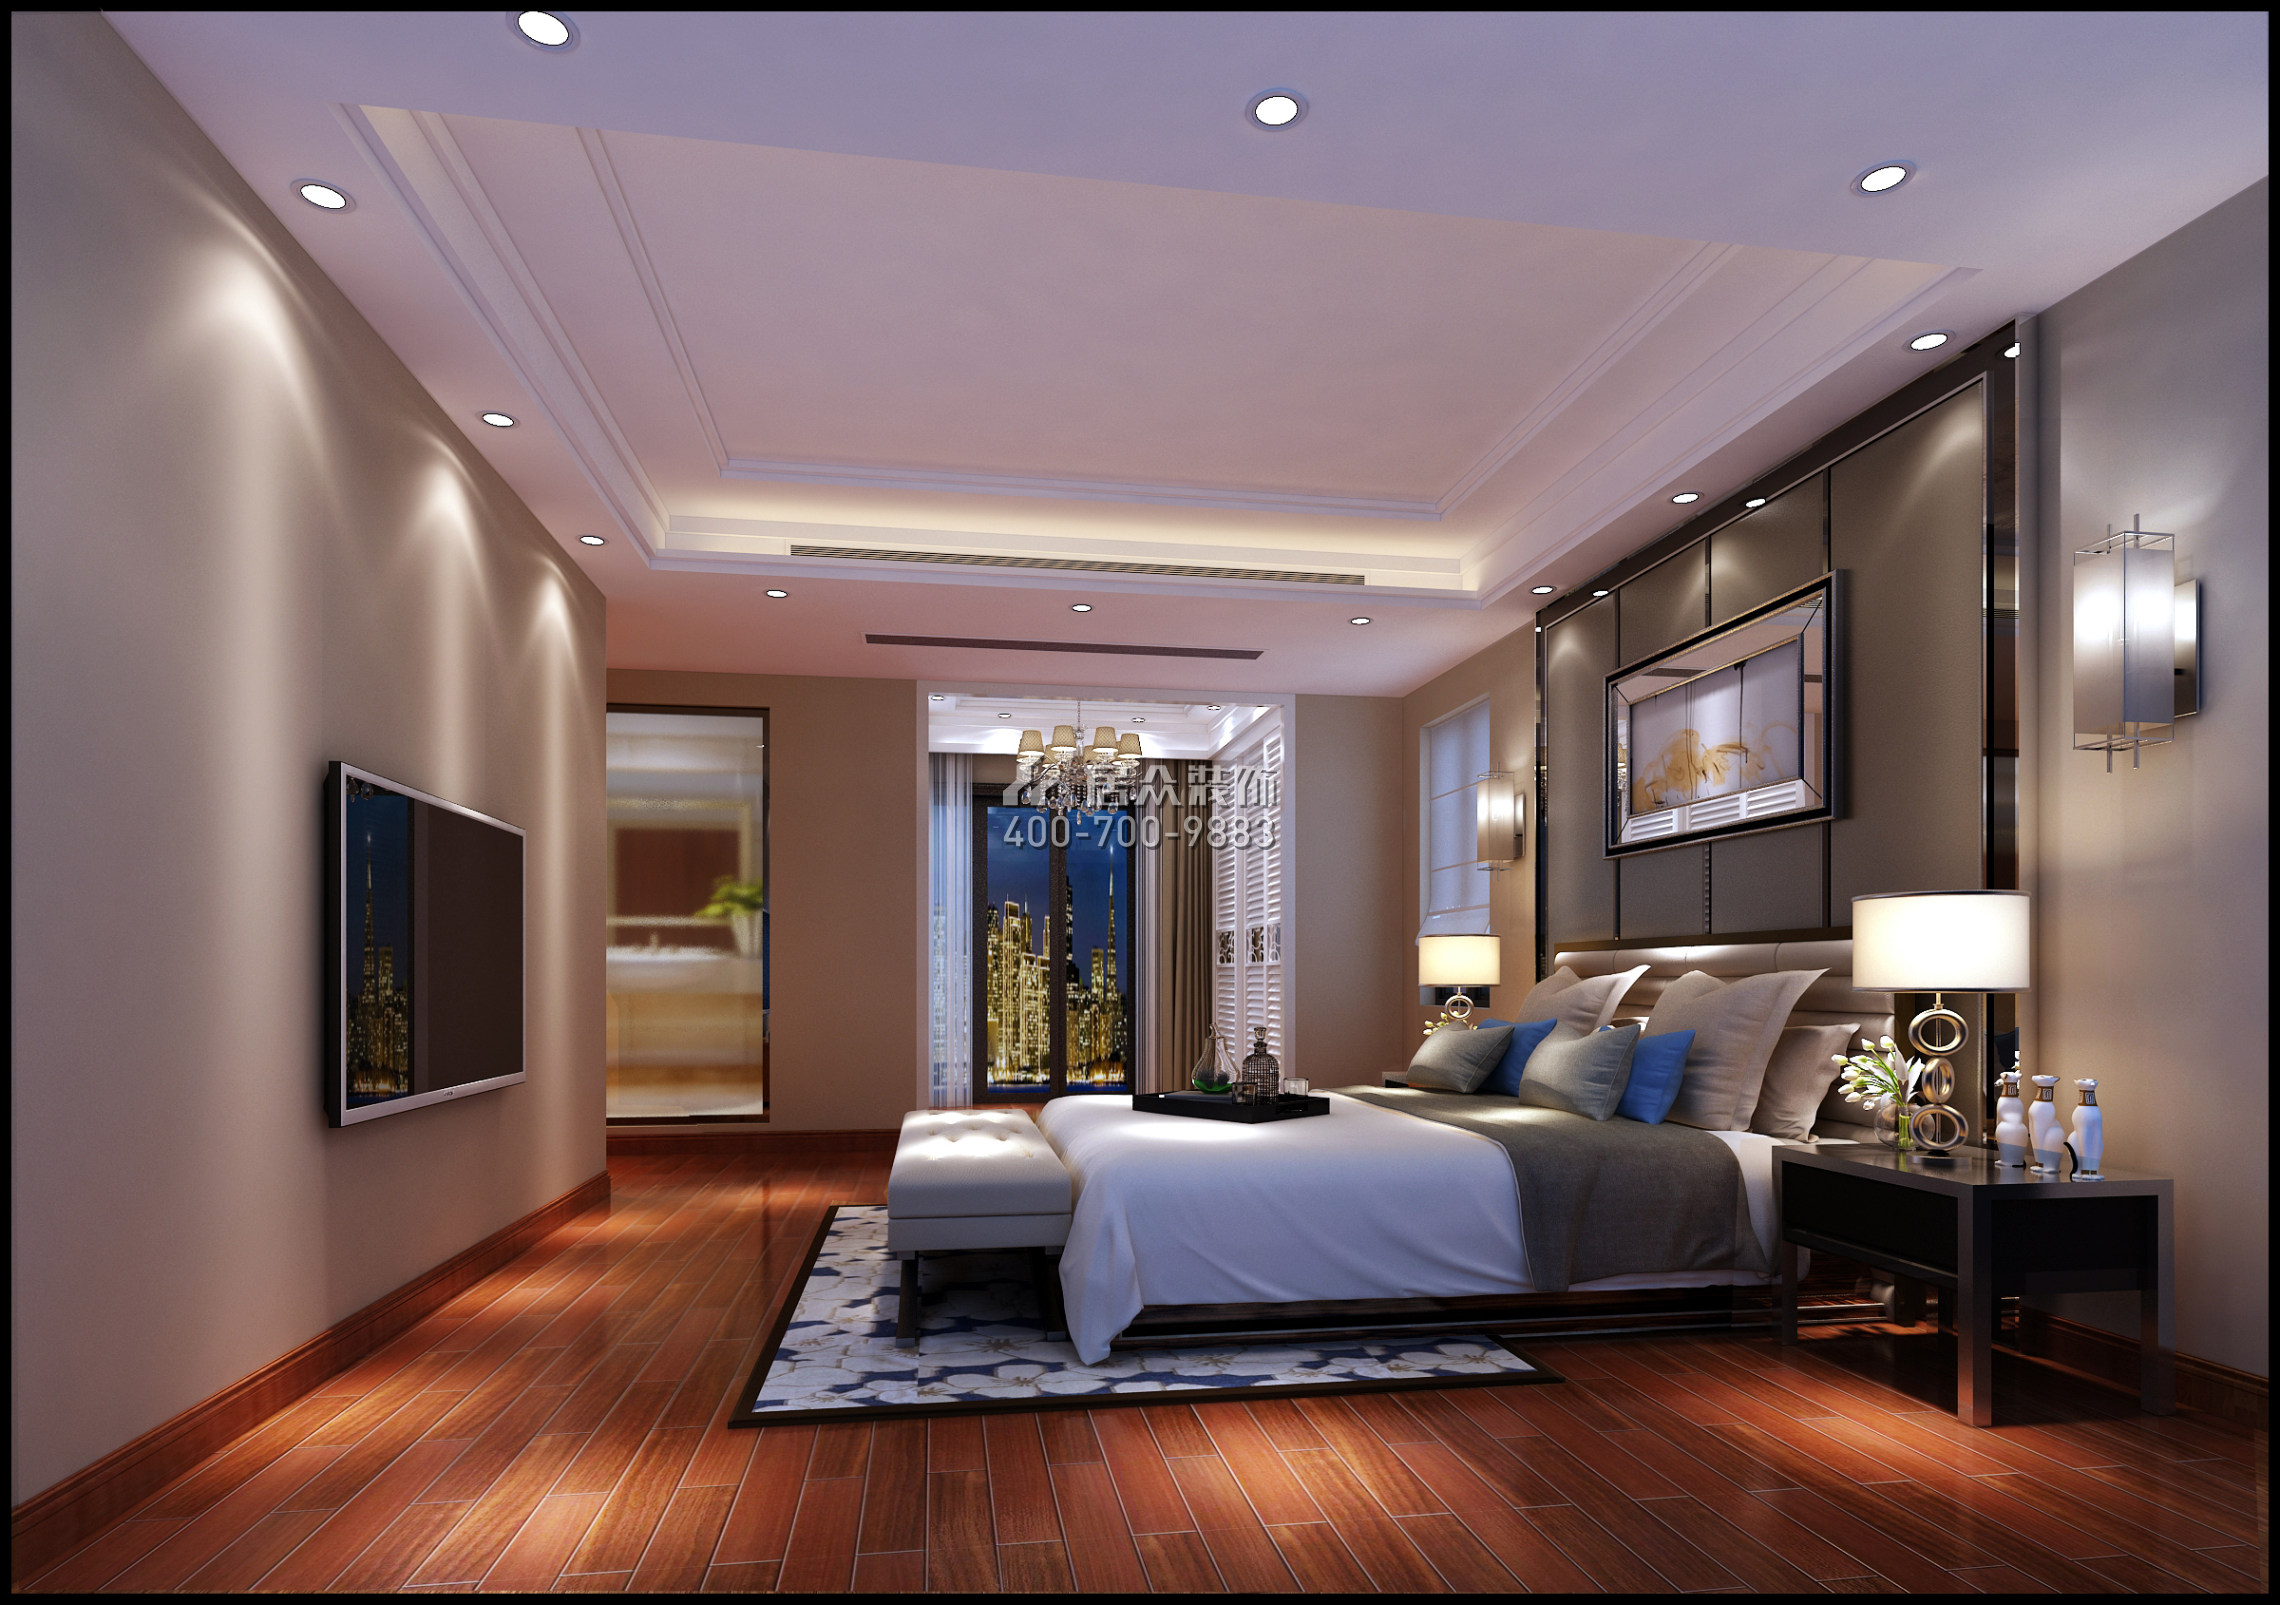 西薈城89平方米現代簡約風格平層戶型臥室裝修效果圖